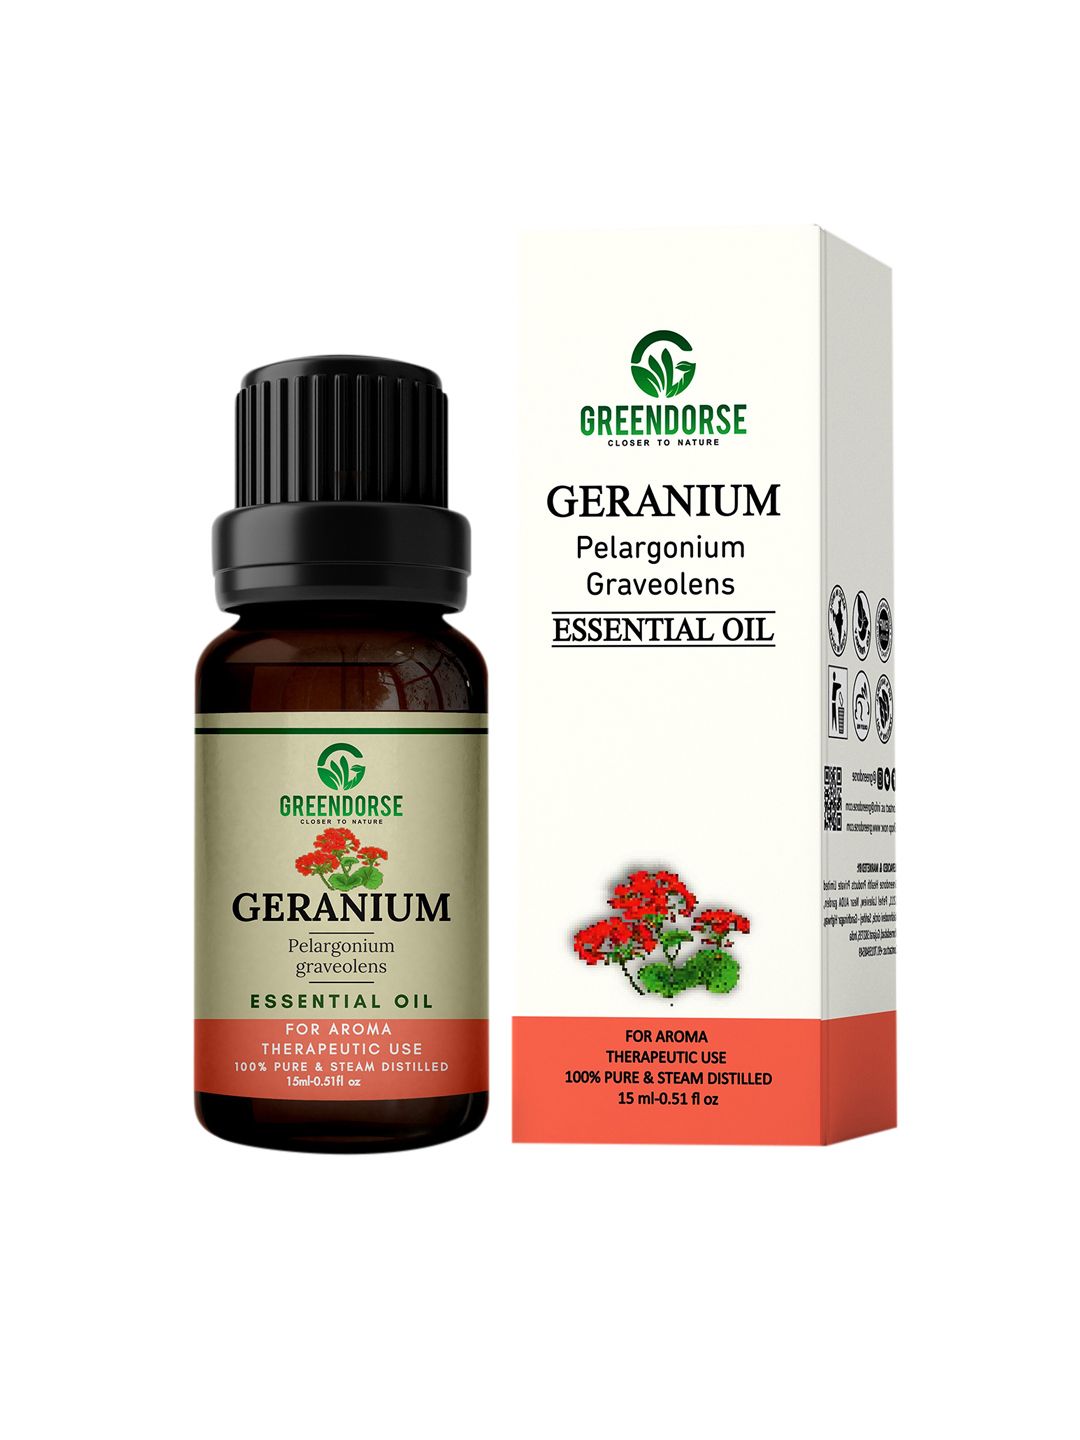 GREENDORSE Unisex Geranium Essential Oil 15ml Price in India